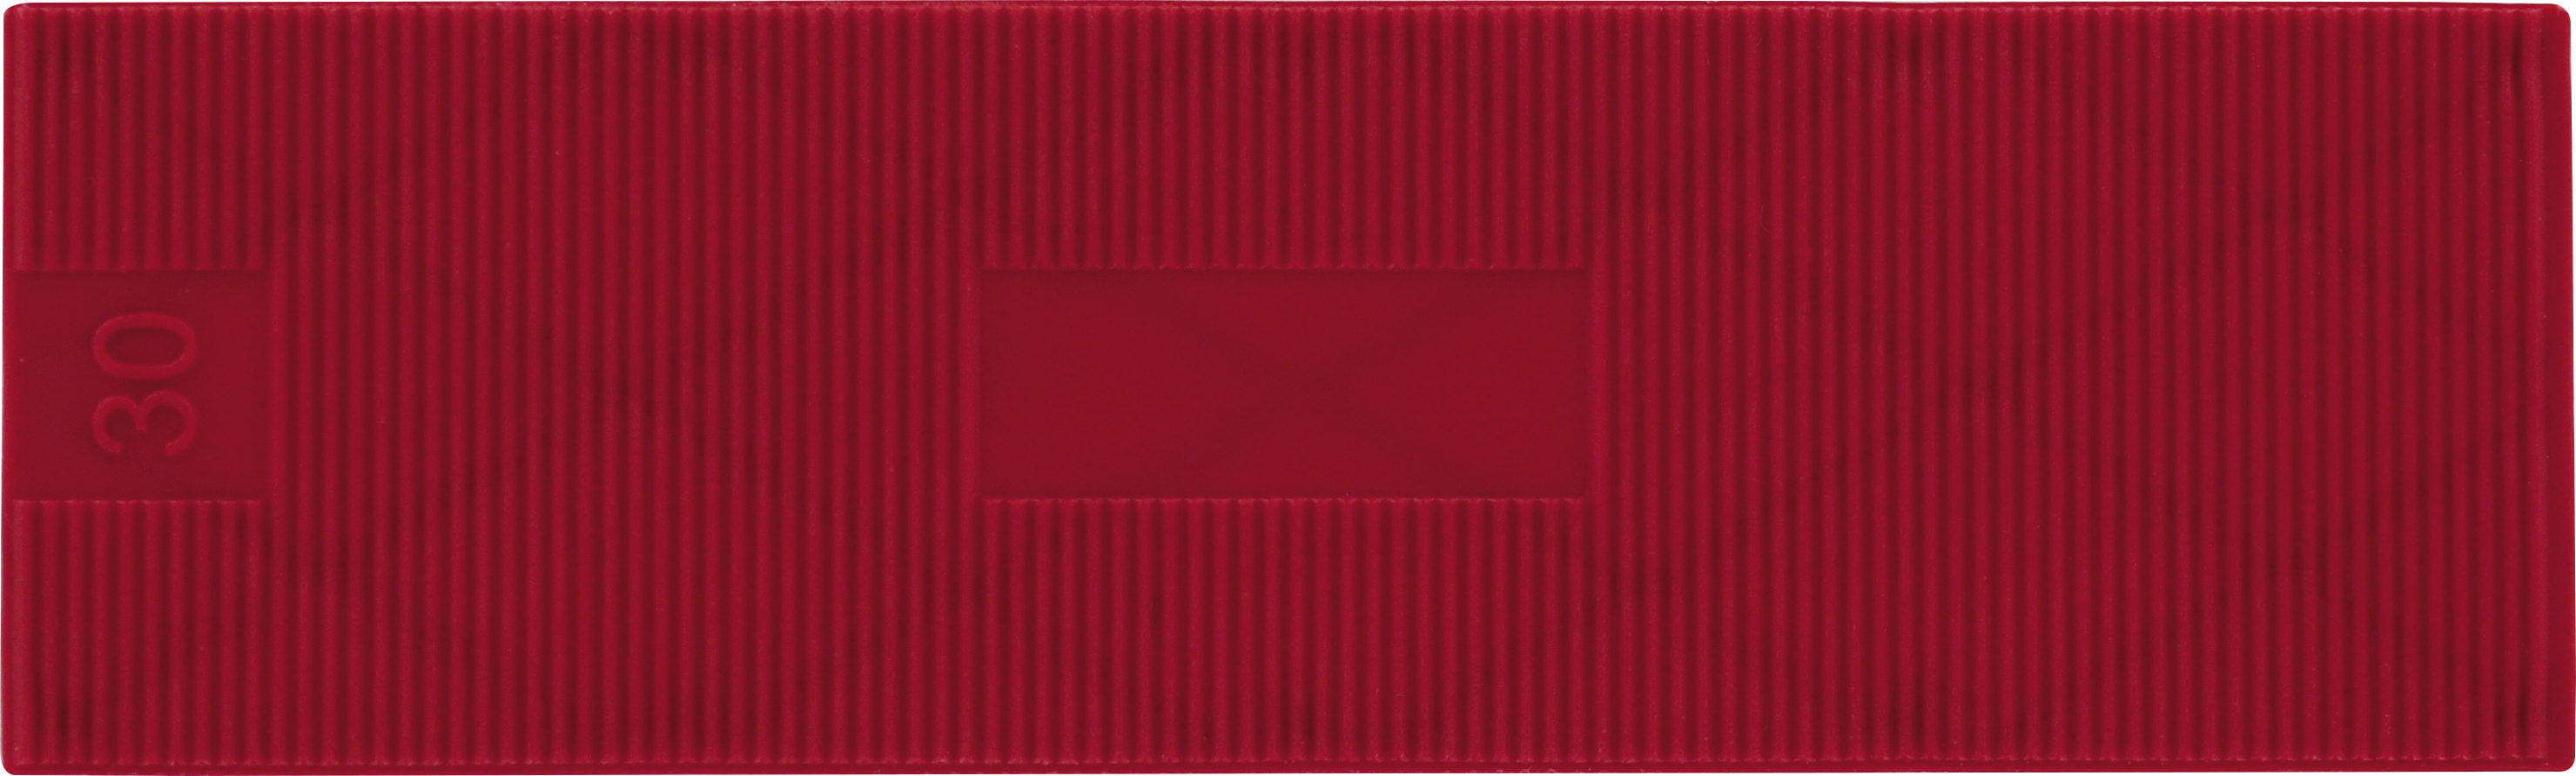 TRIUSO Unterlegplättchen 100x30x3mm rot 50 Stk. Kunststoff